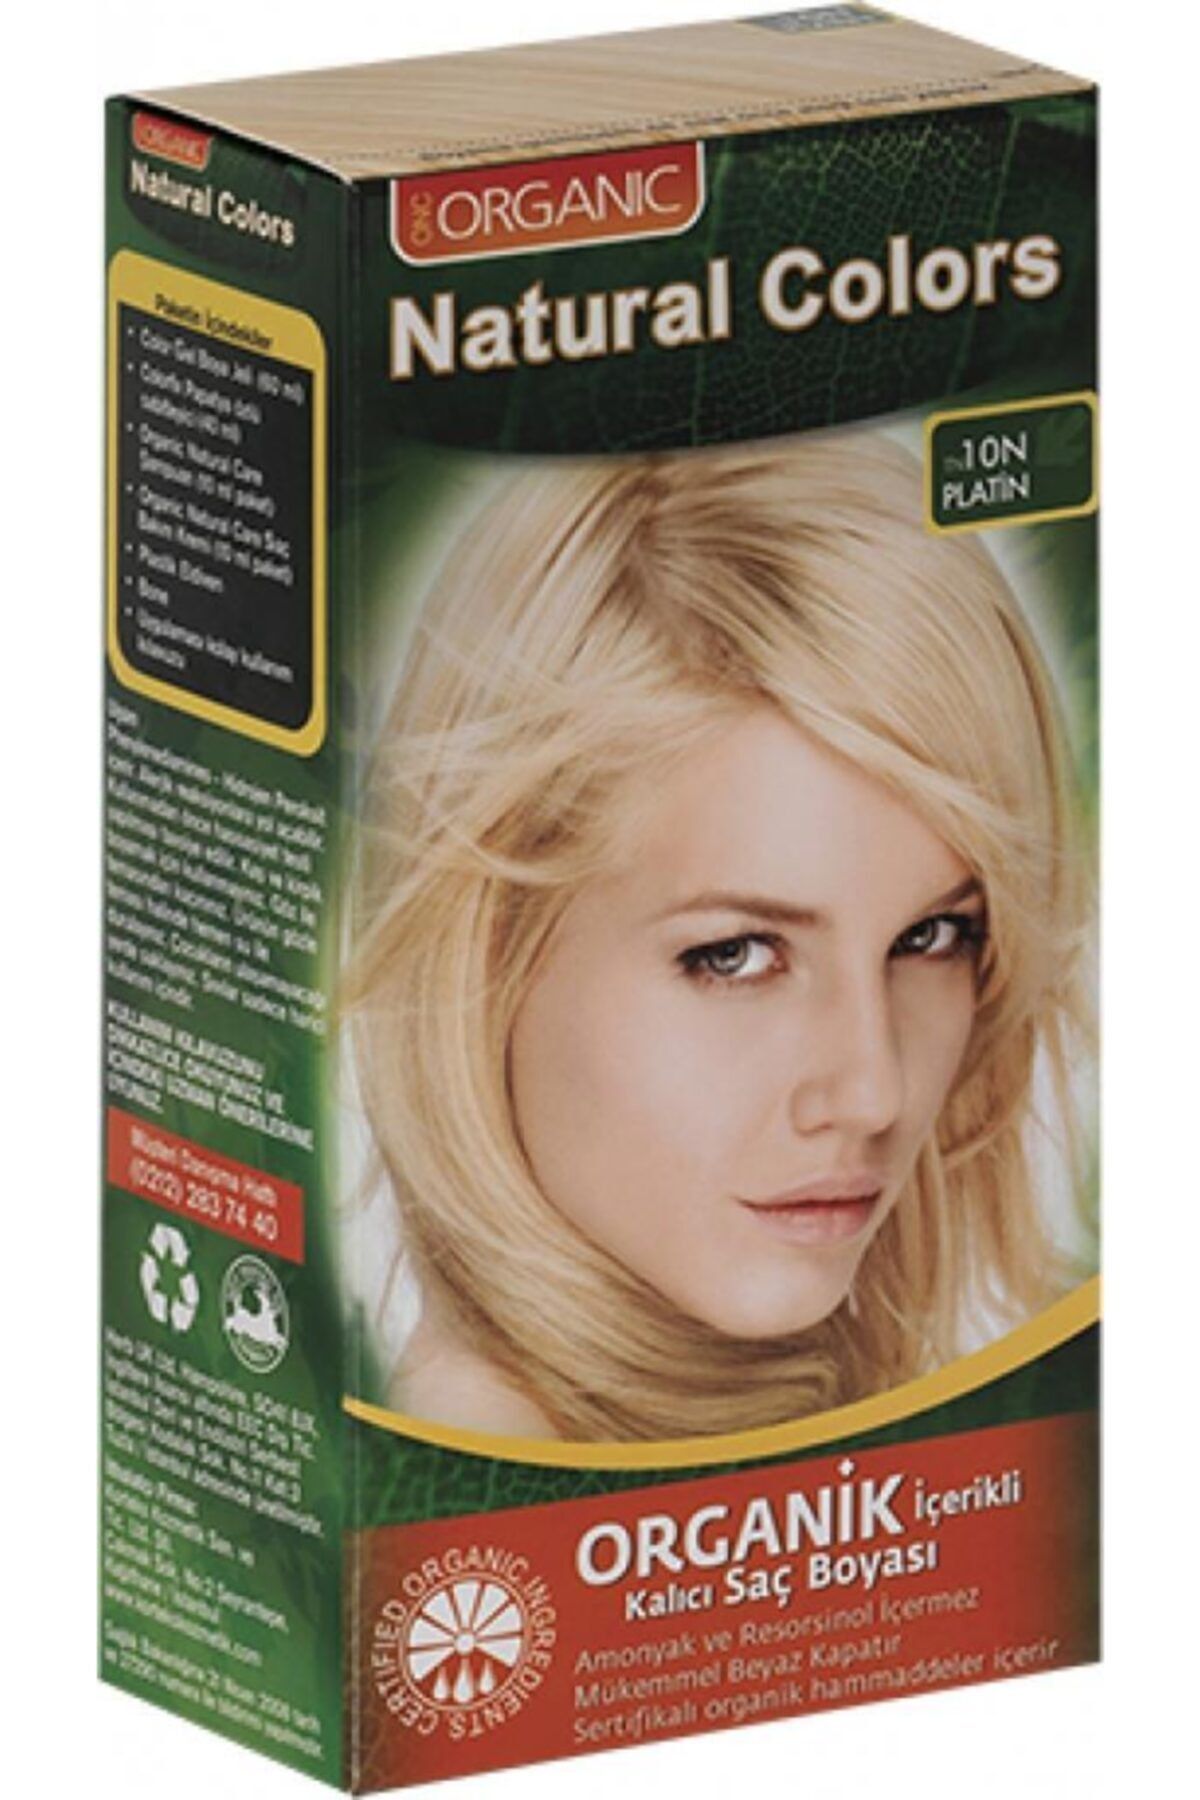 Organic Natural Colors Natural Colors Organik Saç Boyası 10n Platin